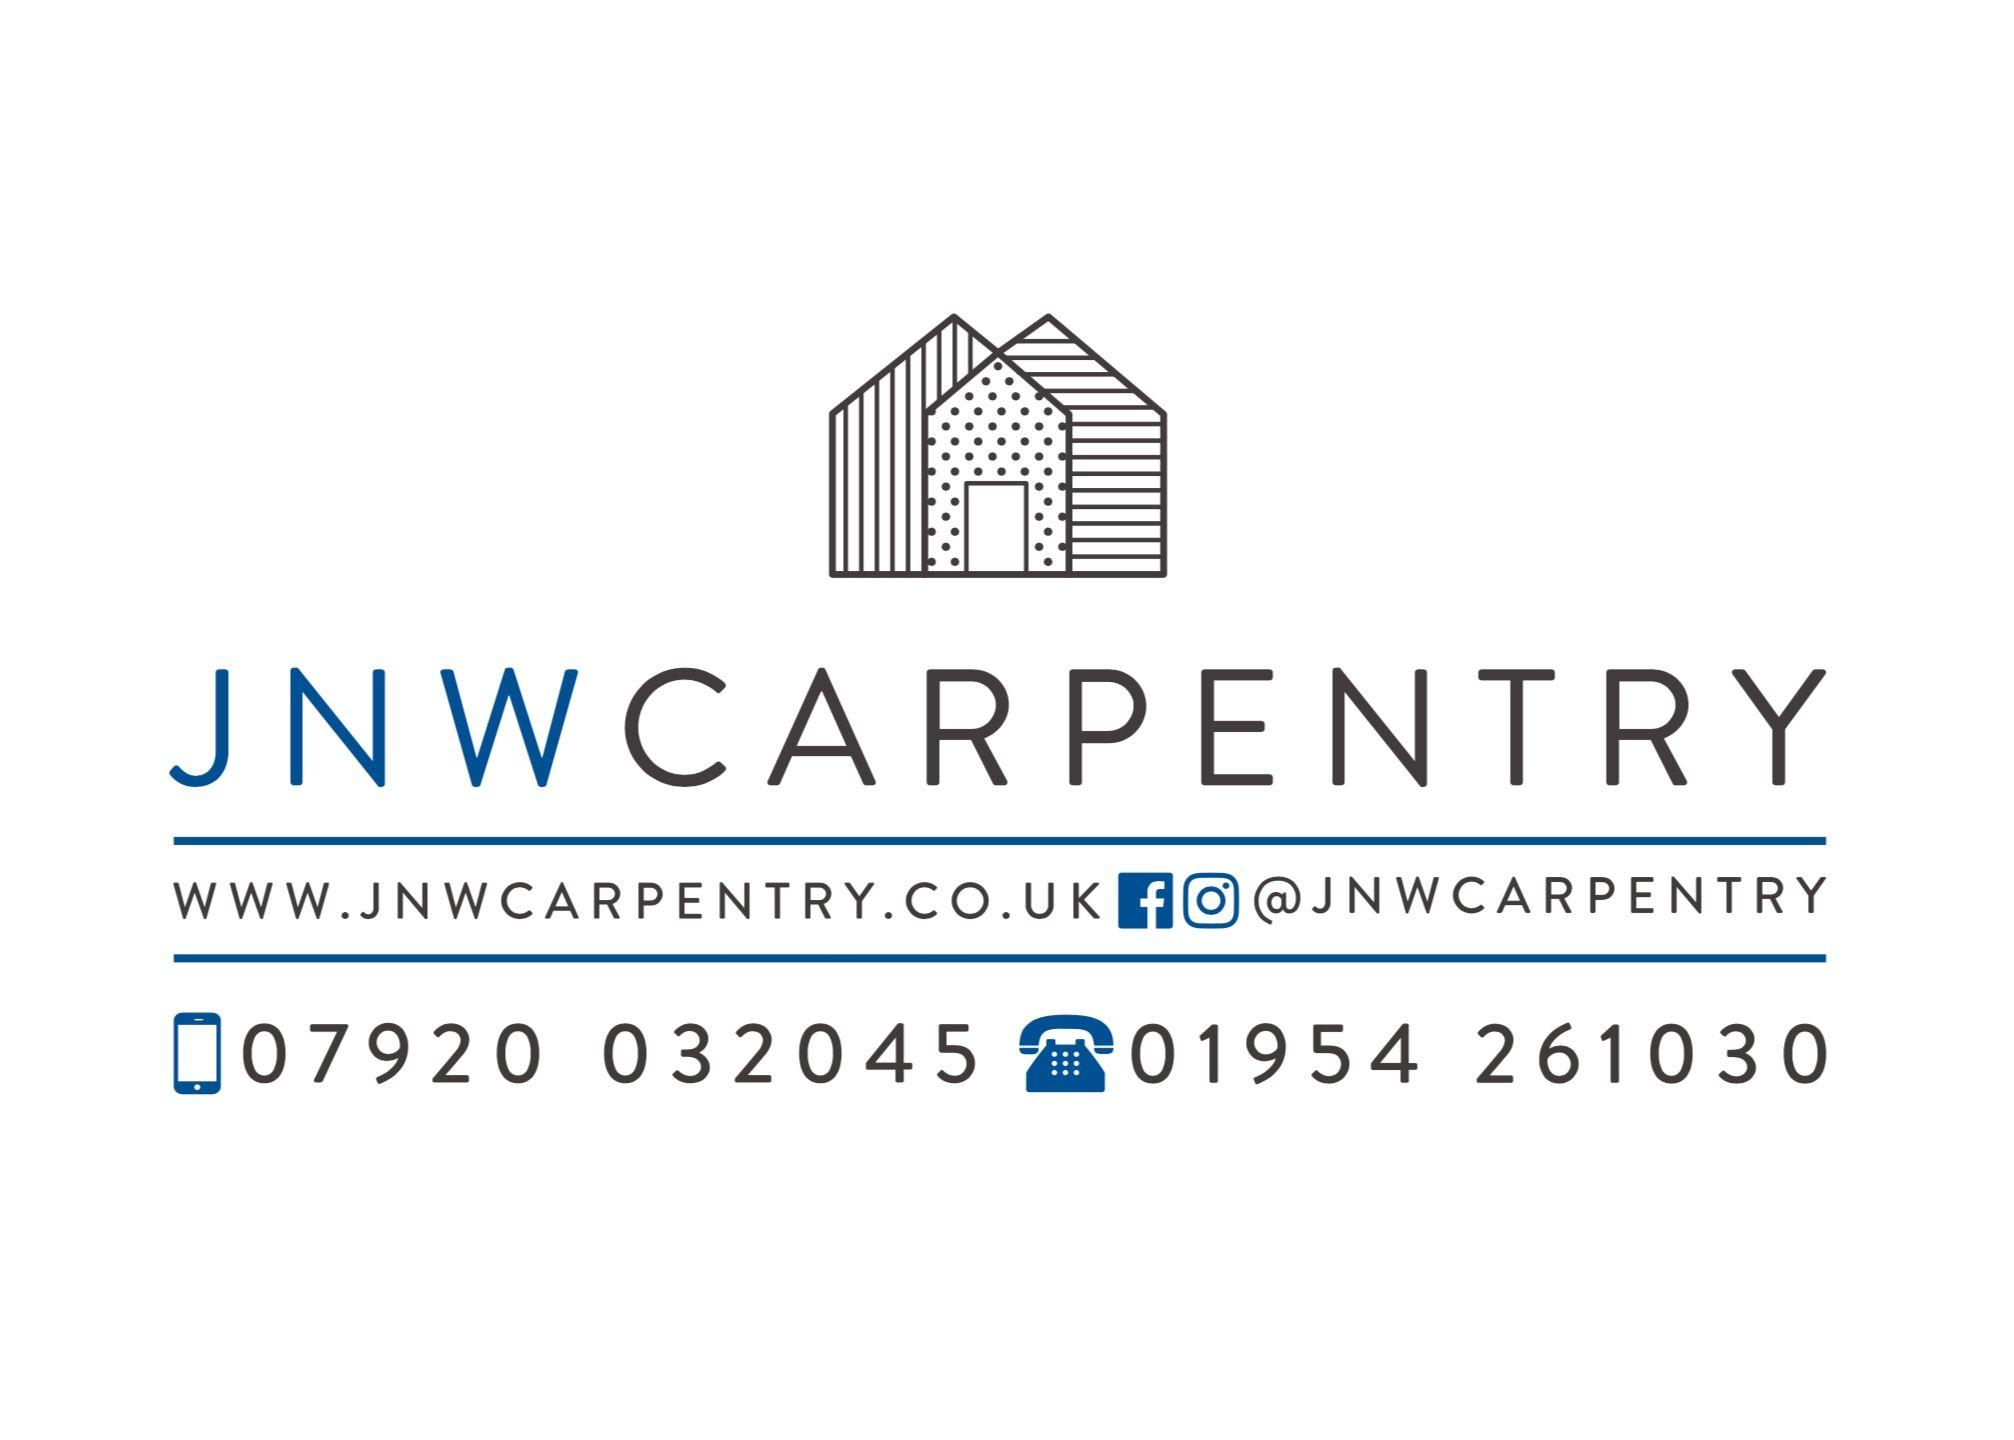 Carpenter Company Logo - JNW Carpentry. Company logo | JNW Carpentry in 2018 | Pinterest ...